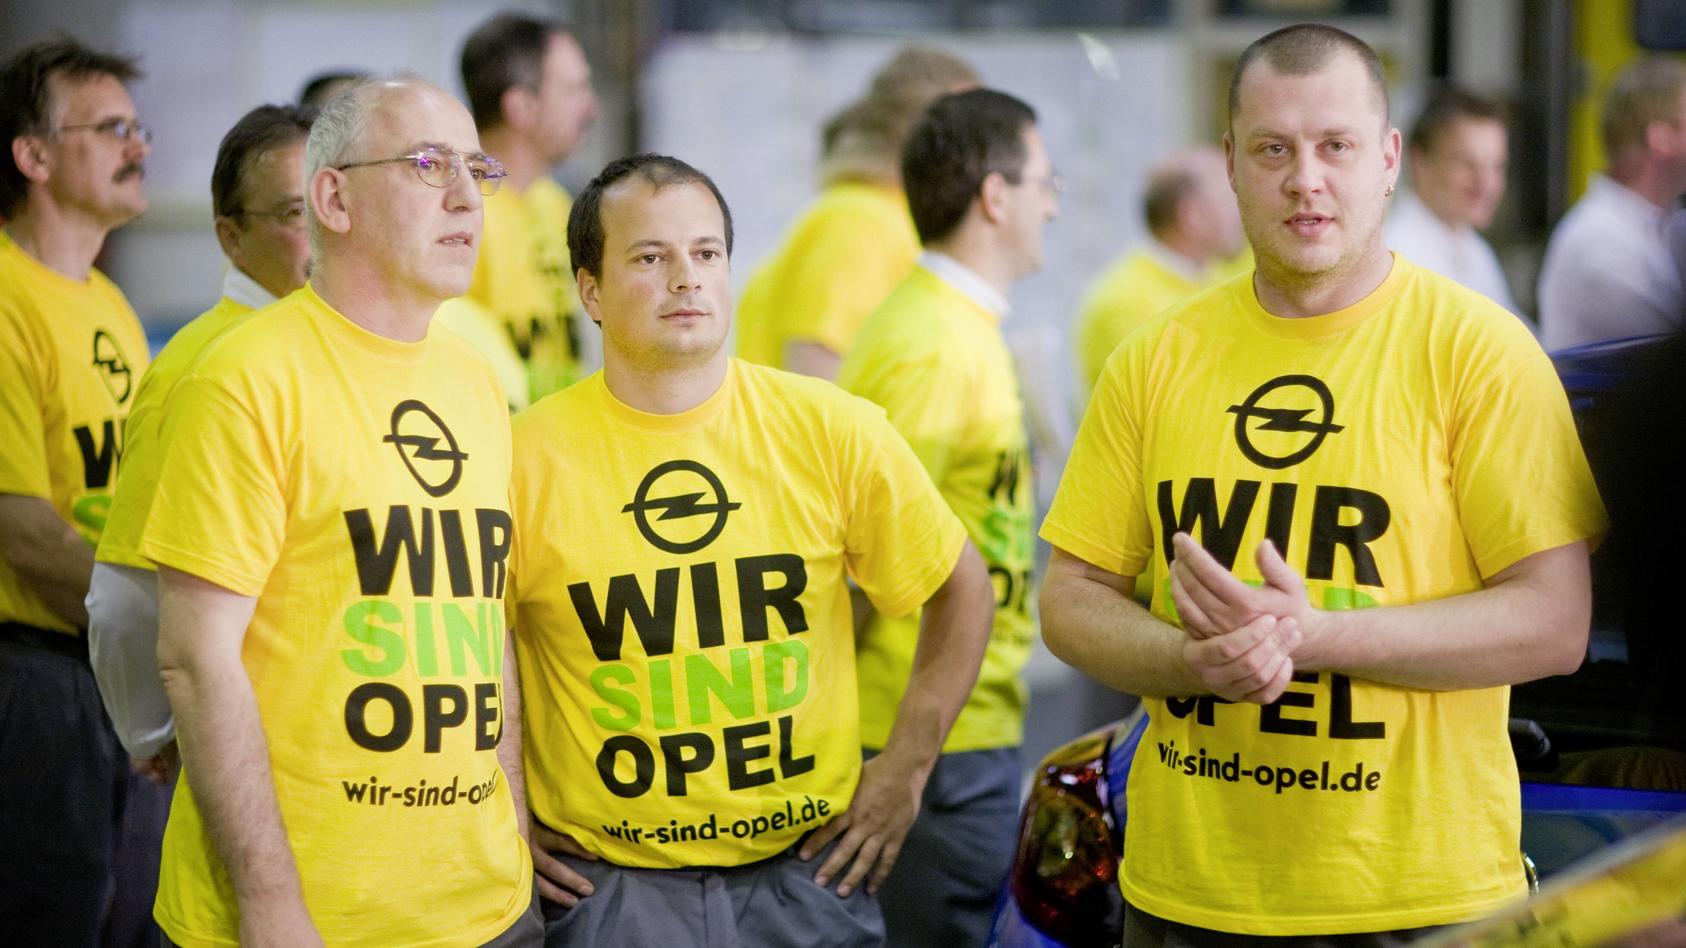 Die Mitarbeiter von Opel können erstmal aufatmen: Für die nächsten fünf Jahre sind ihre Jobs sicher.